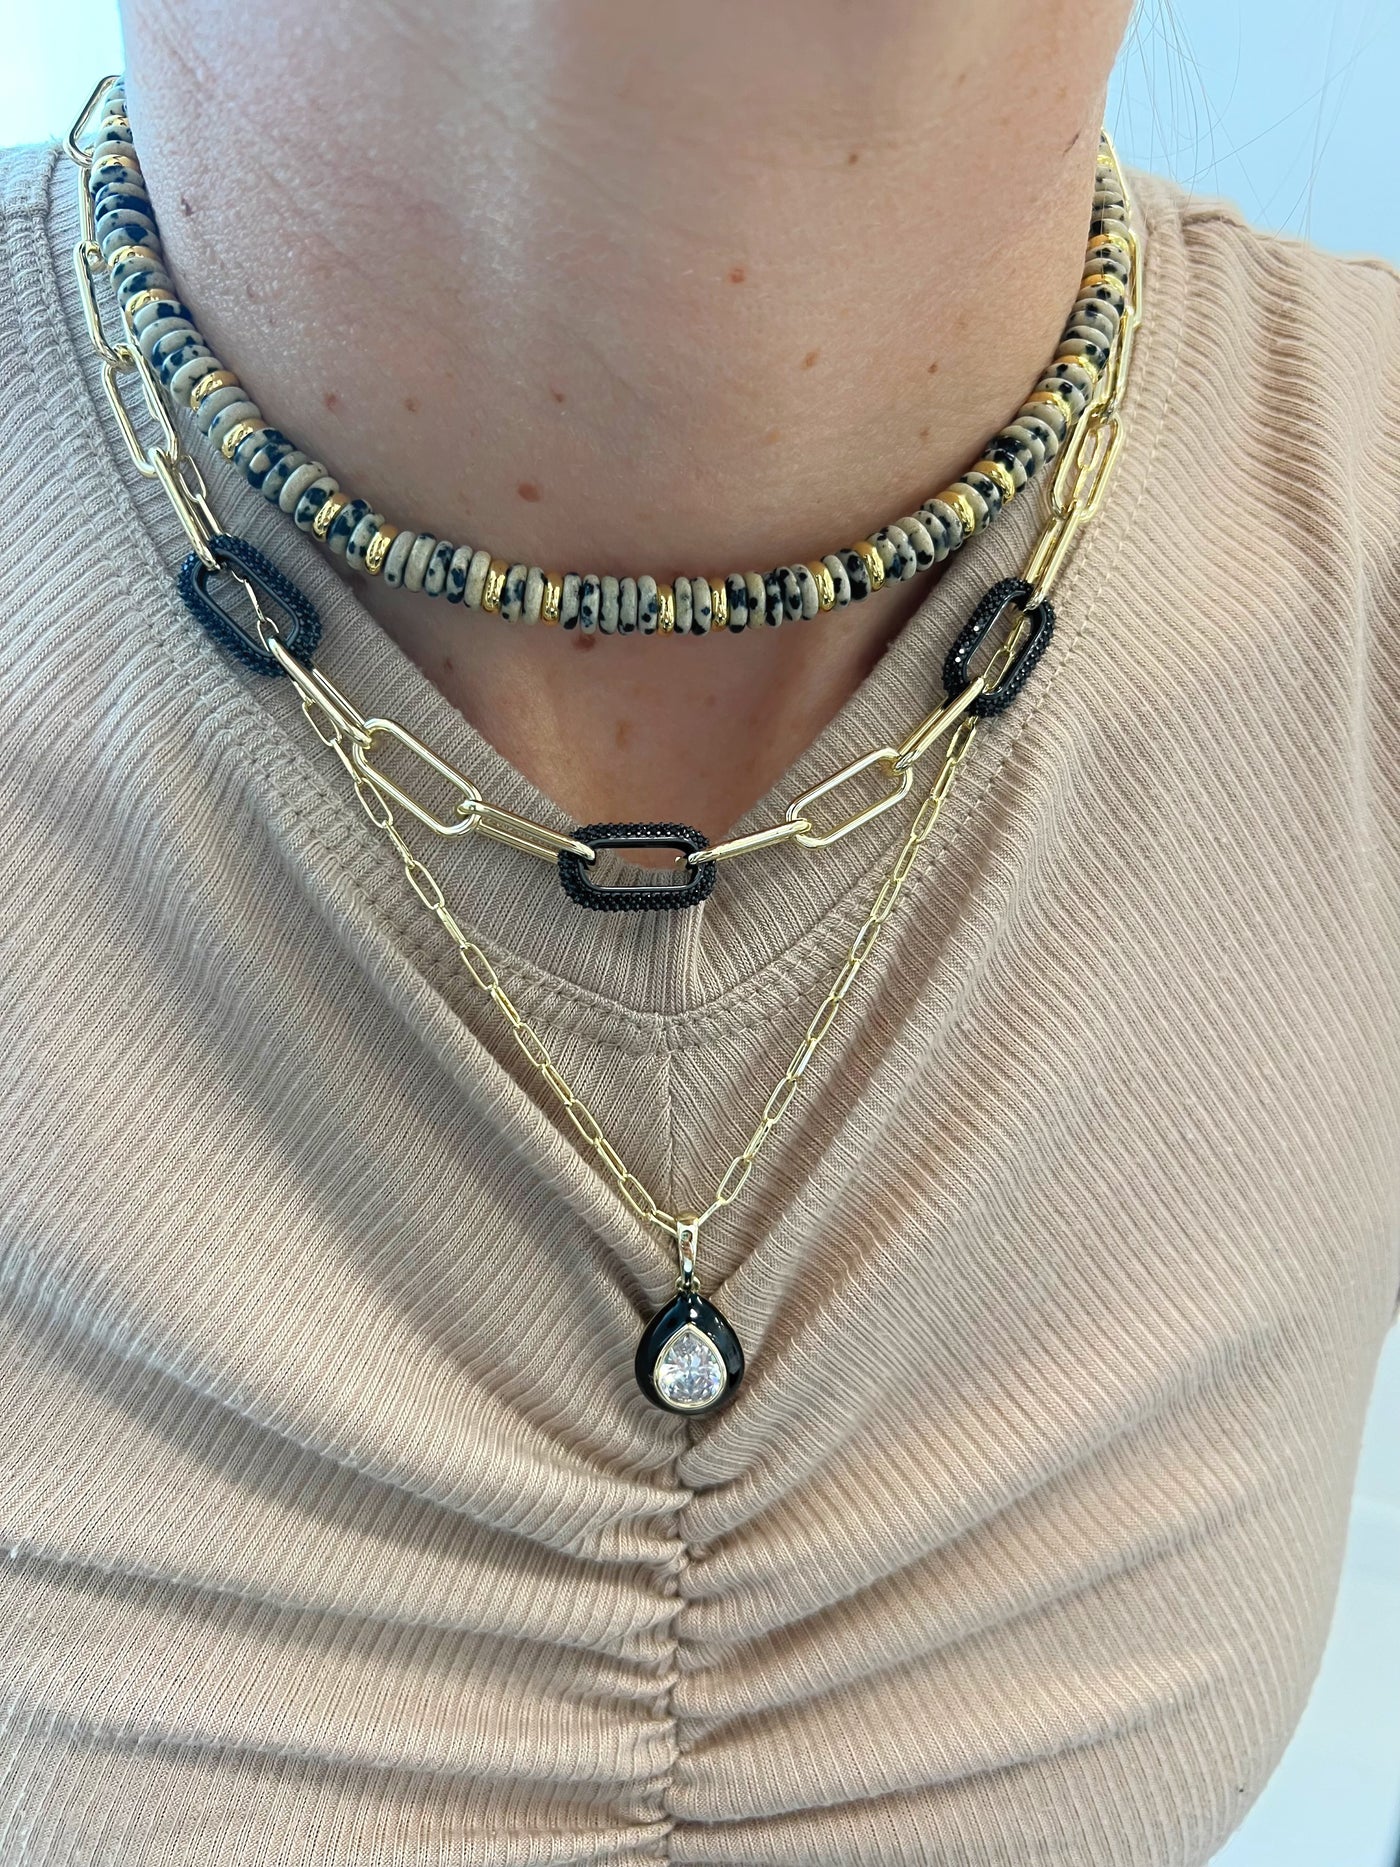 Dalmatian Pukka Necklace